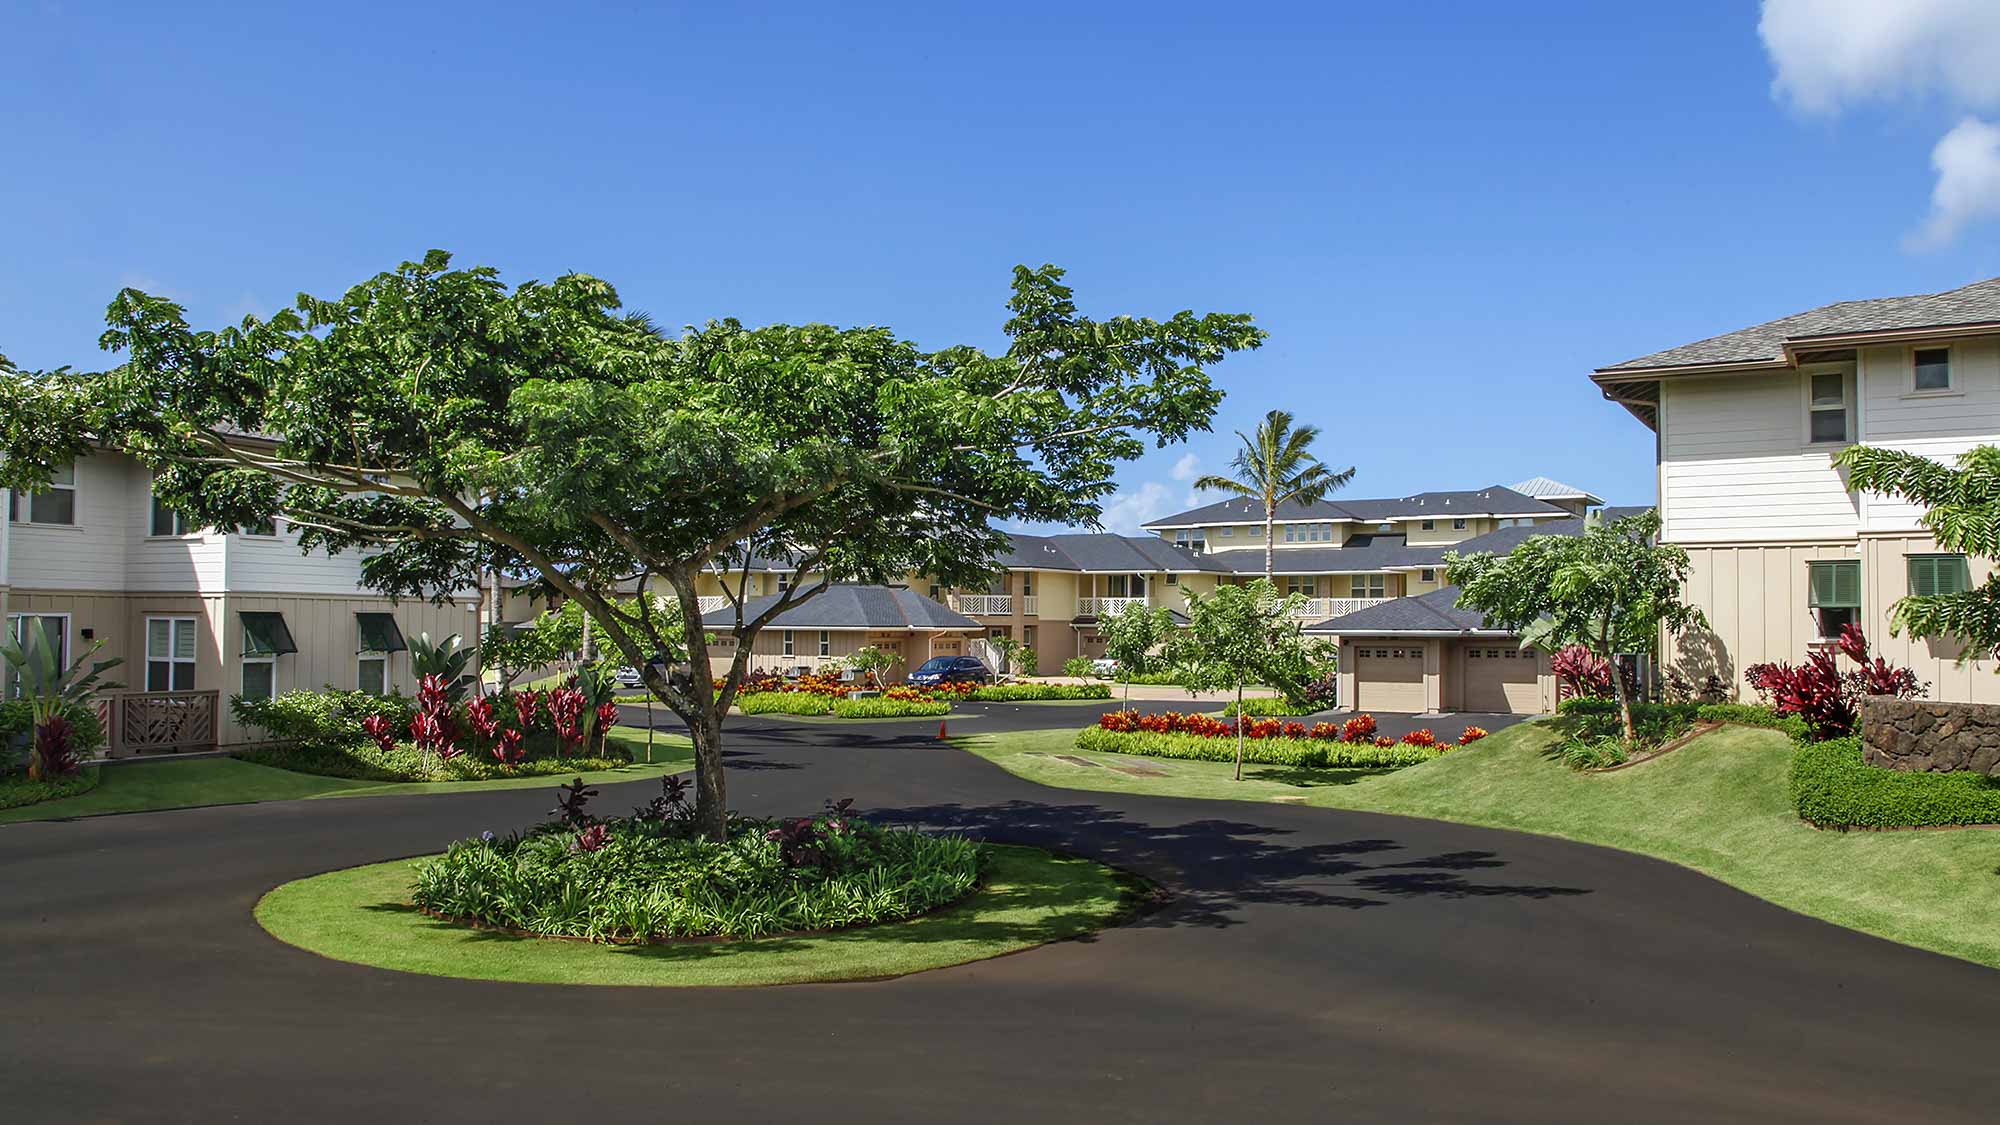 Pili Mai Resort at Poipu 4 - Parrish Kauai